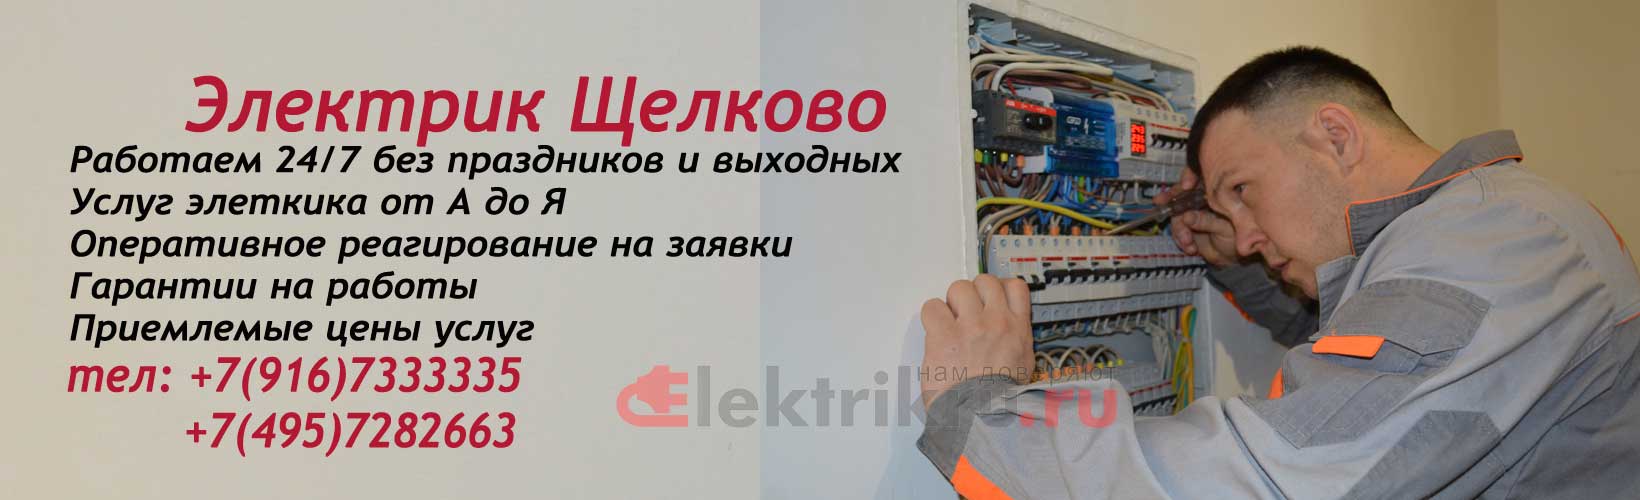 Электрик района Щелково